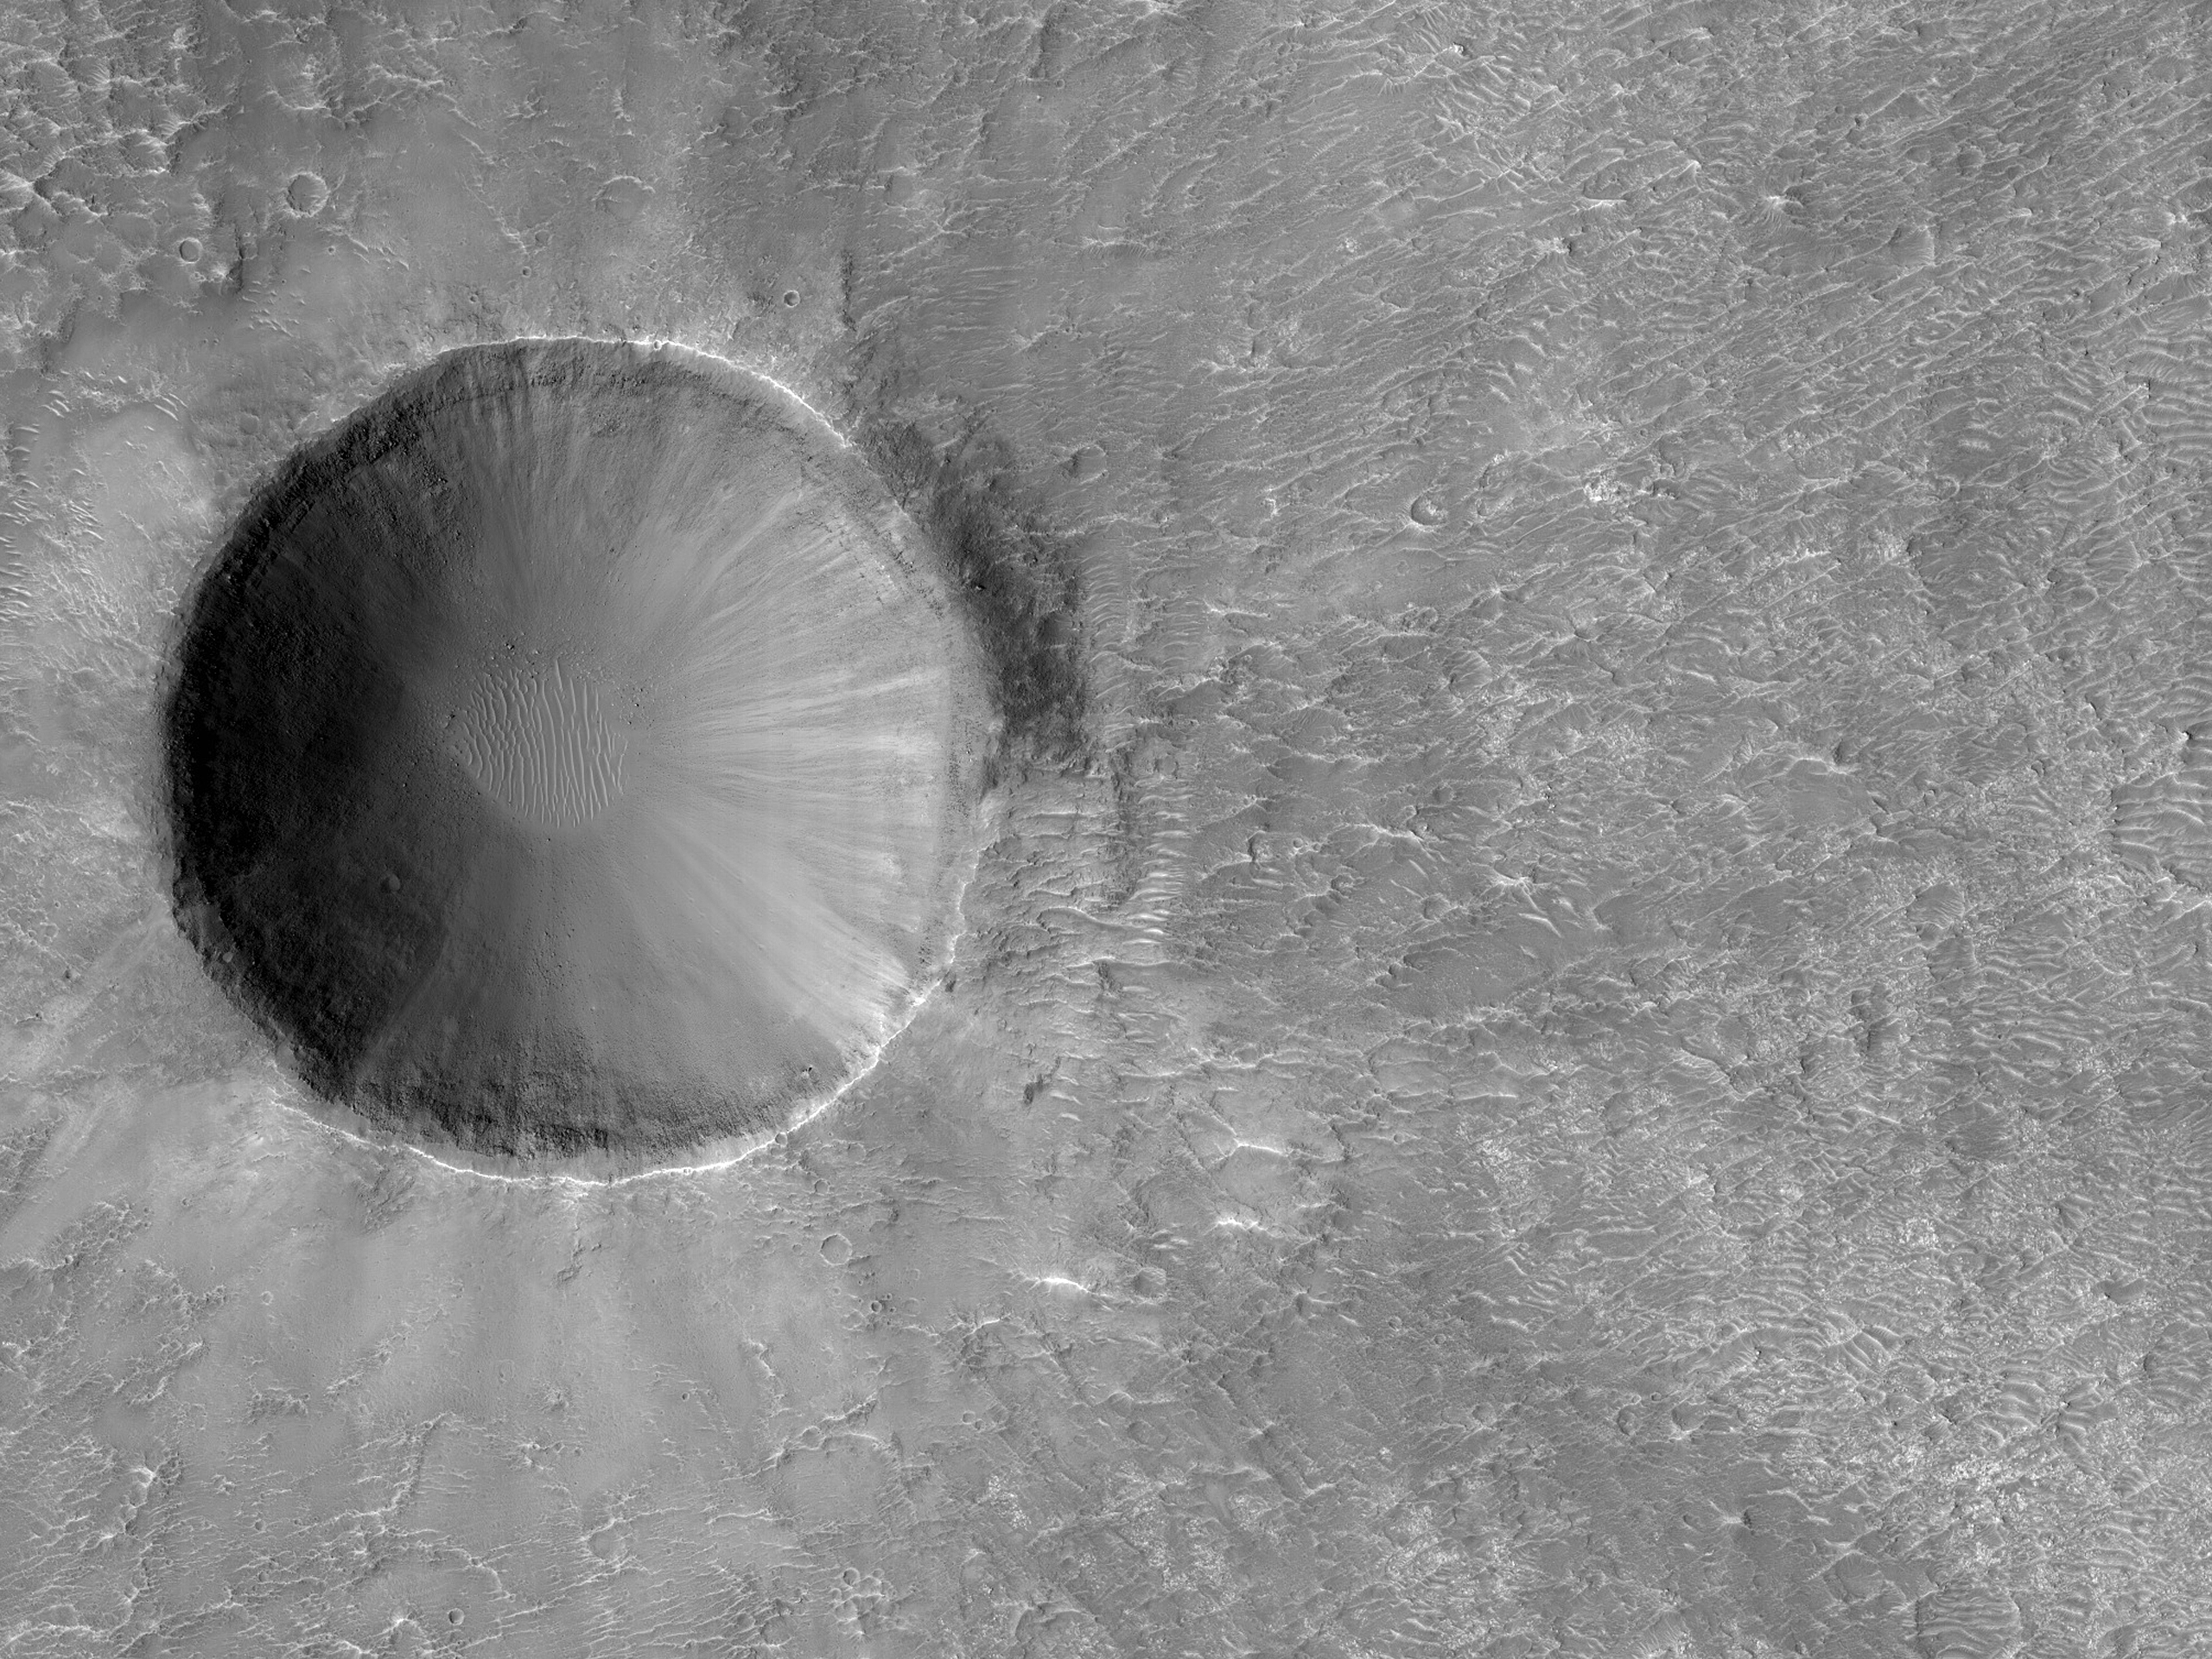 Az aljzat valószínű előbukkanása egy kráterben